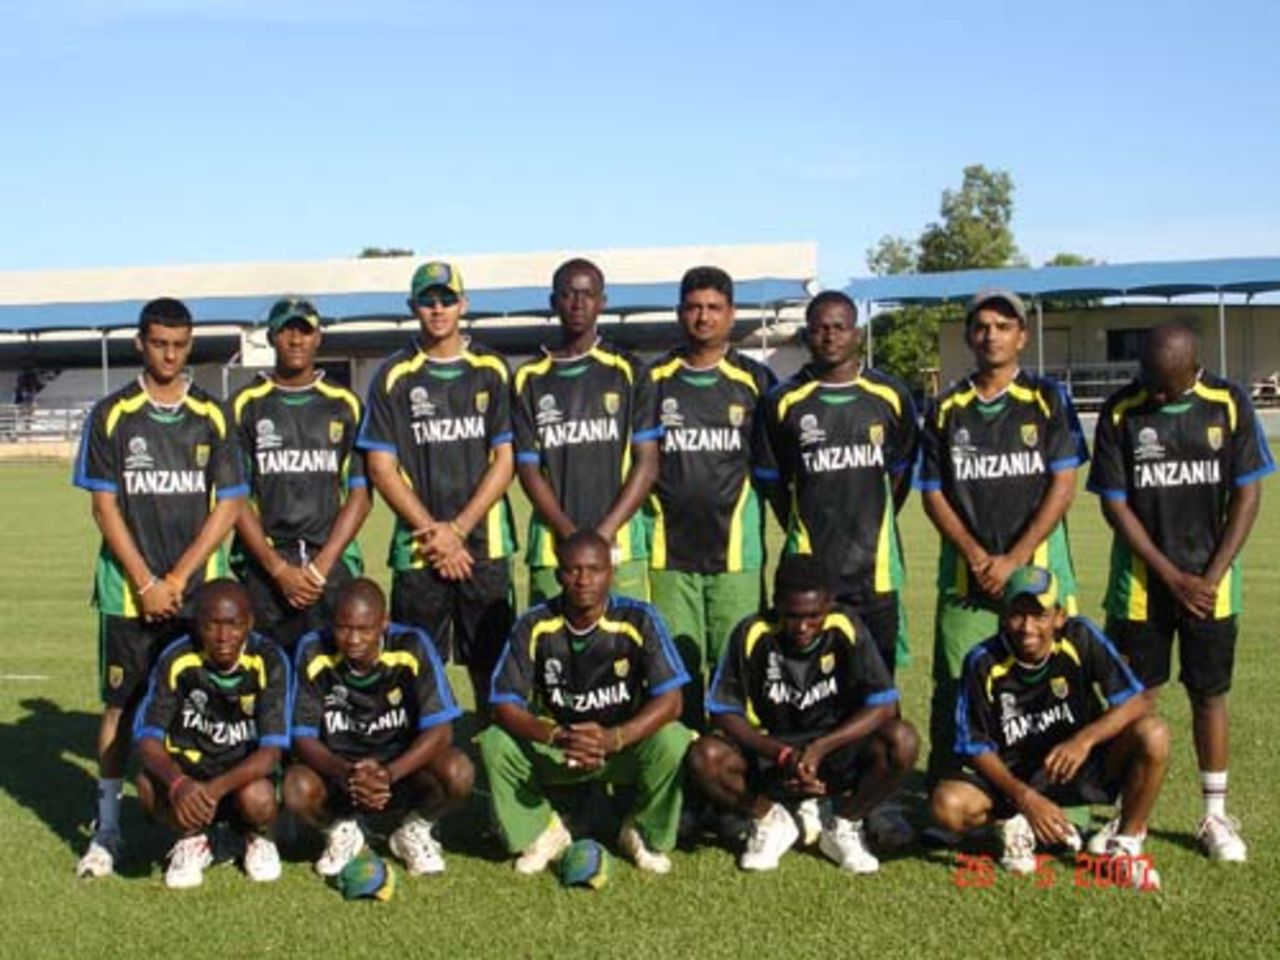 Tanzania team pose for a photo in Darwin